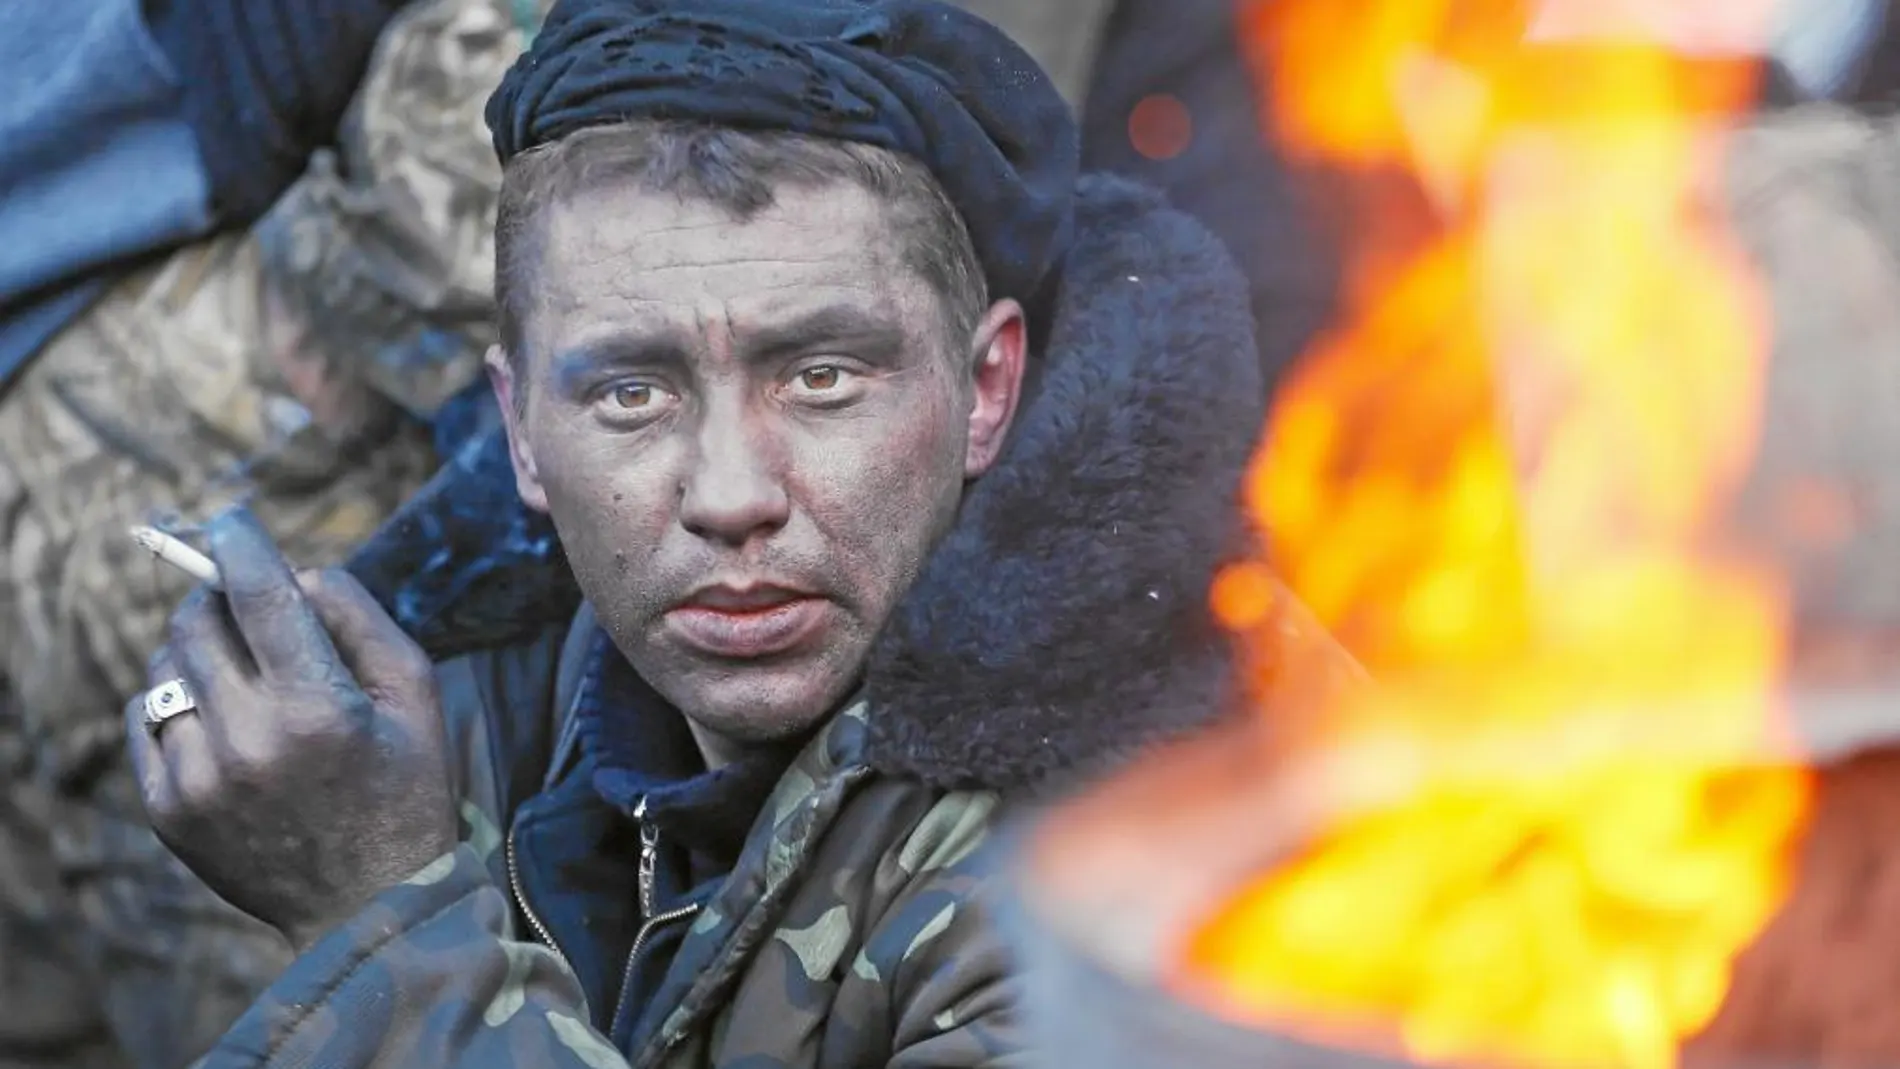 Un manifestante fuma un cigarrillo en una barricada de Kiev